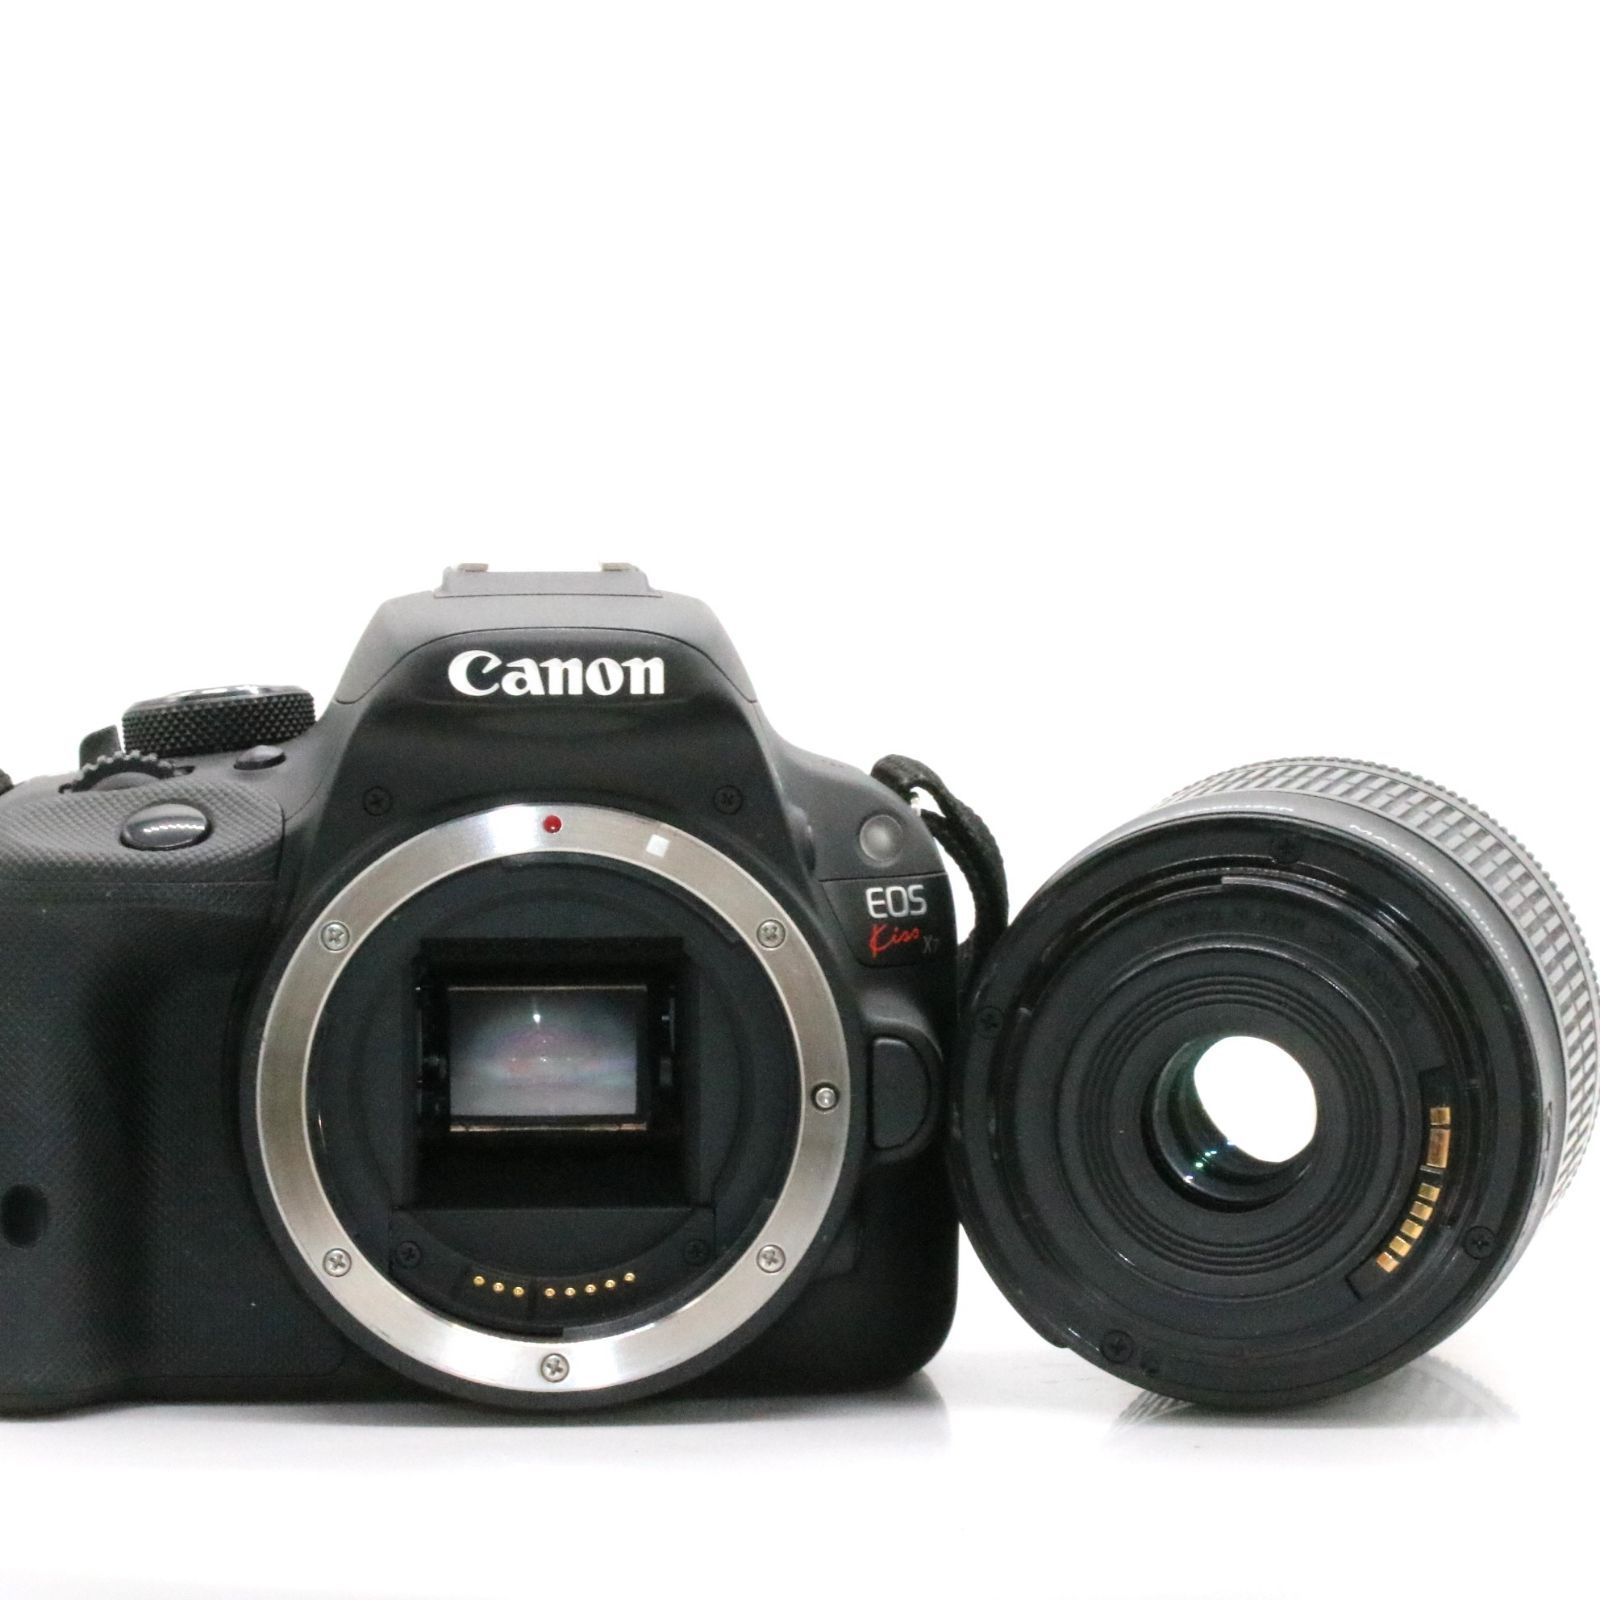 並品 Canon デジタル一眼レフカメラ EOS Kiss X7 レンズキット EF-S18-55mm F3.5-5.6 IS STM付属  KISSX7-1855ISSTMLK